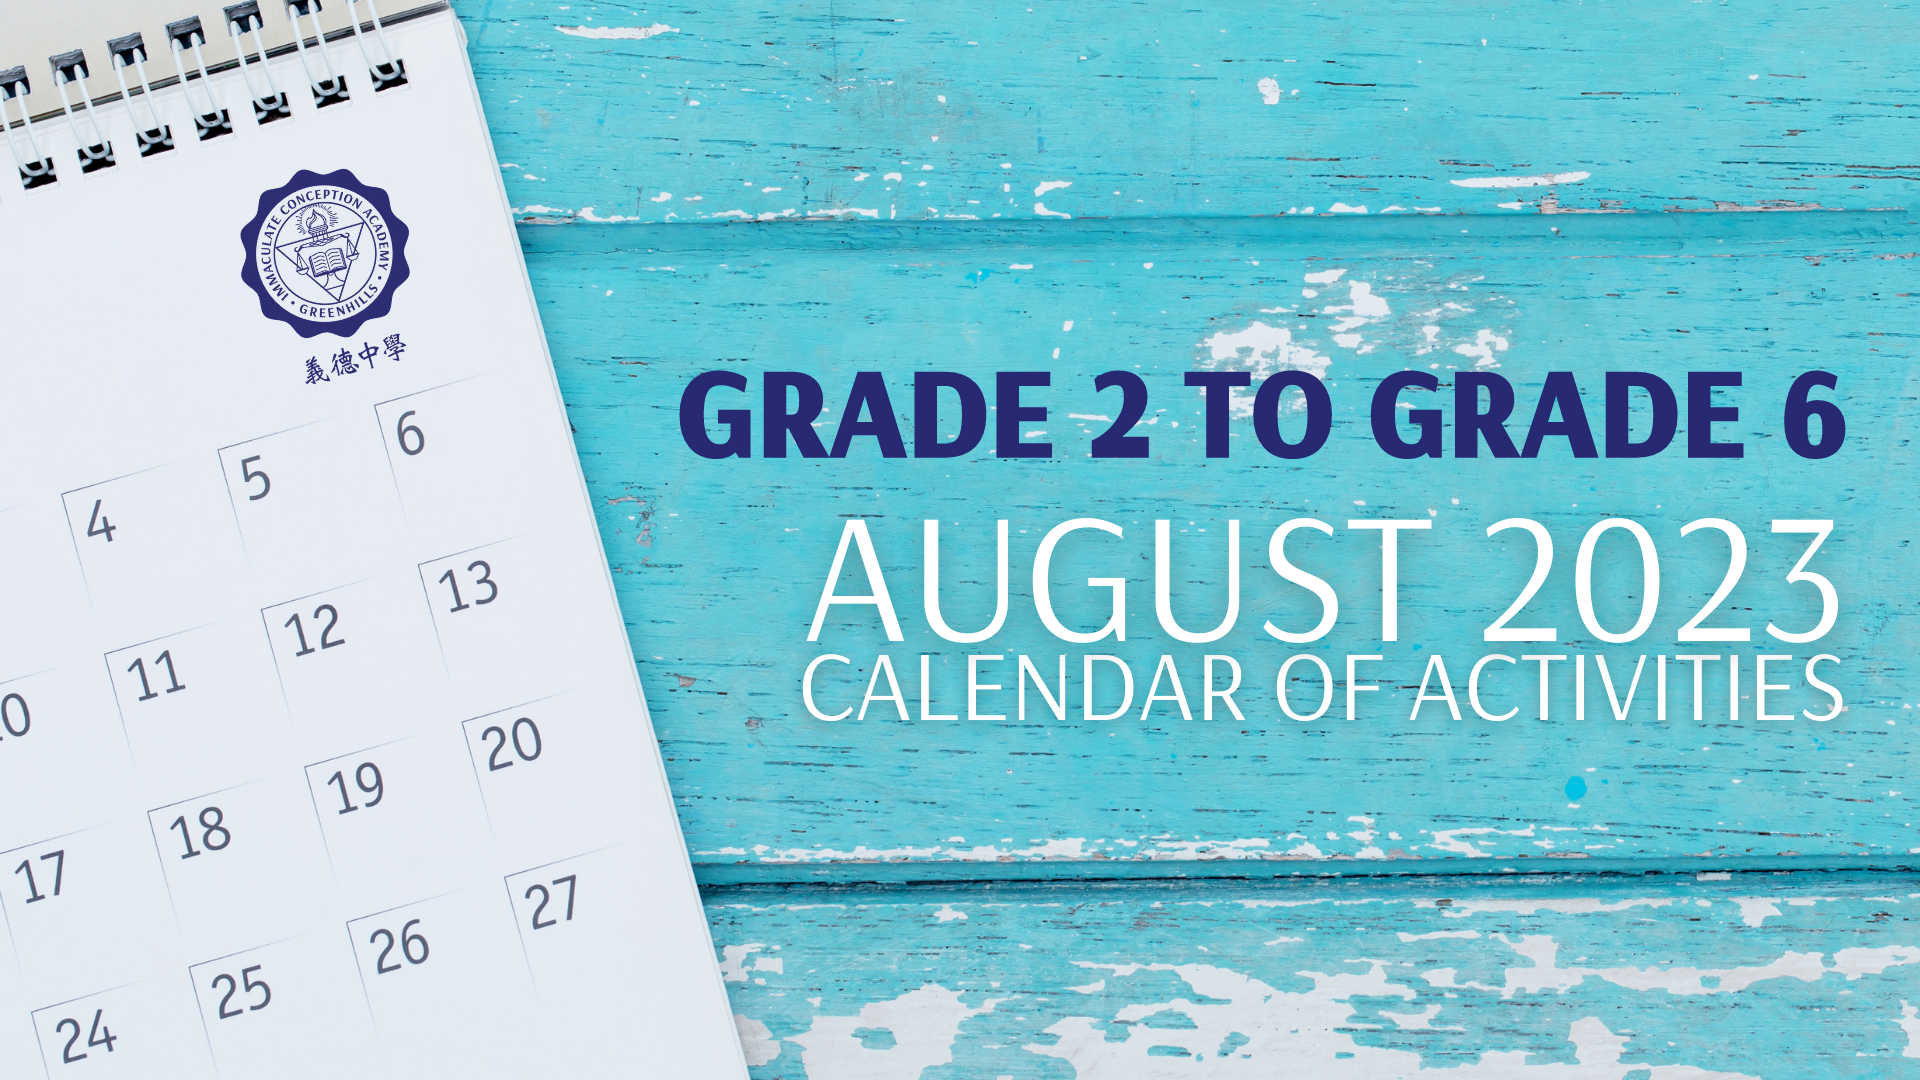 Grade 2 to Grade 6 School Calendar of Activities : August 2023